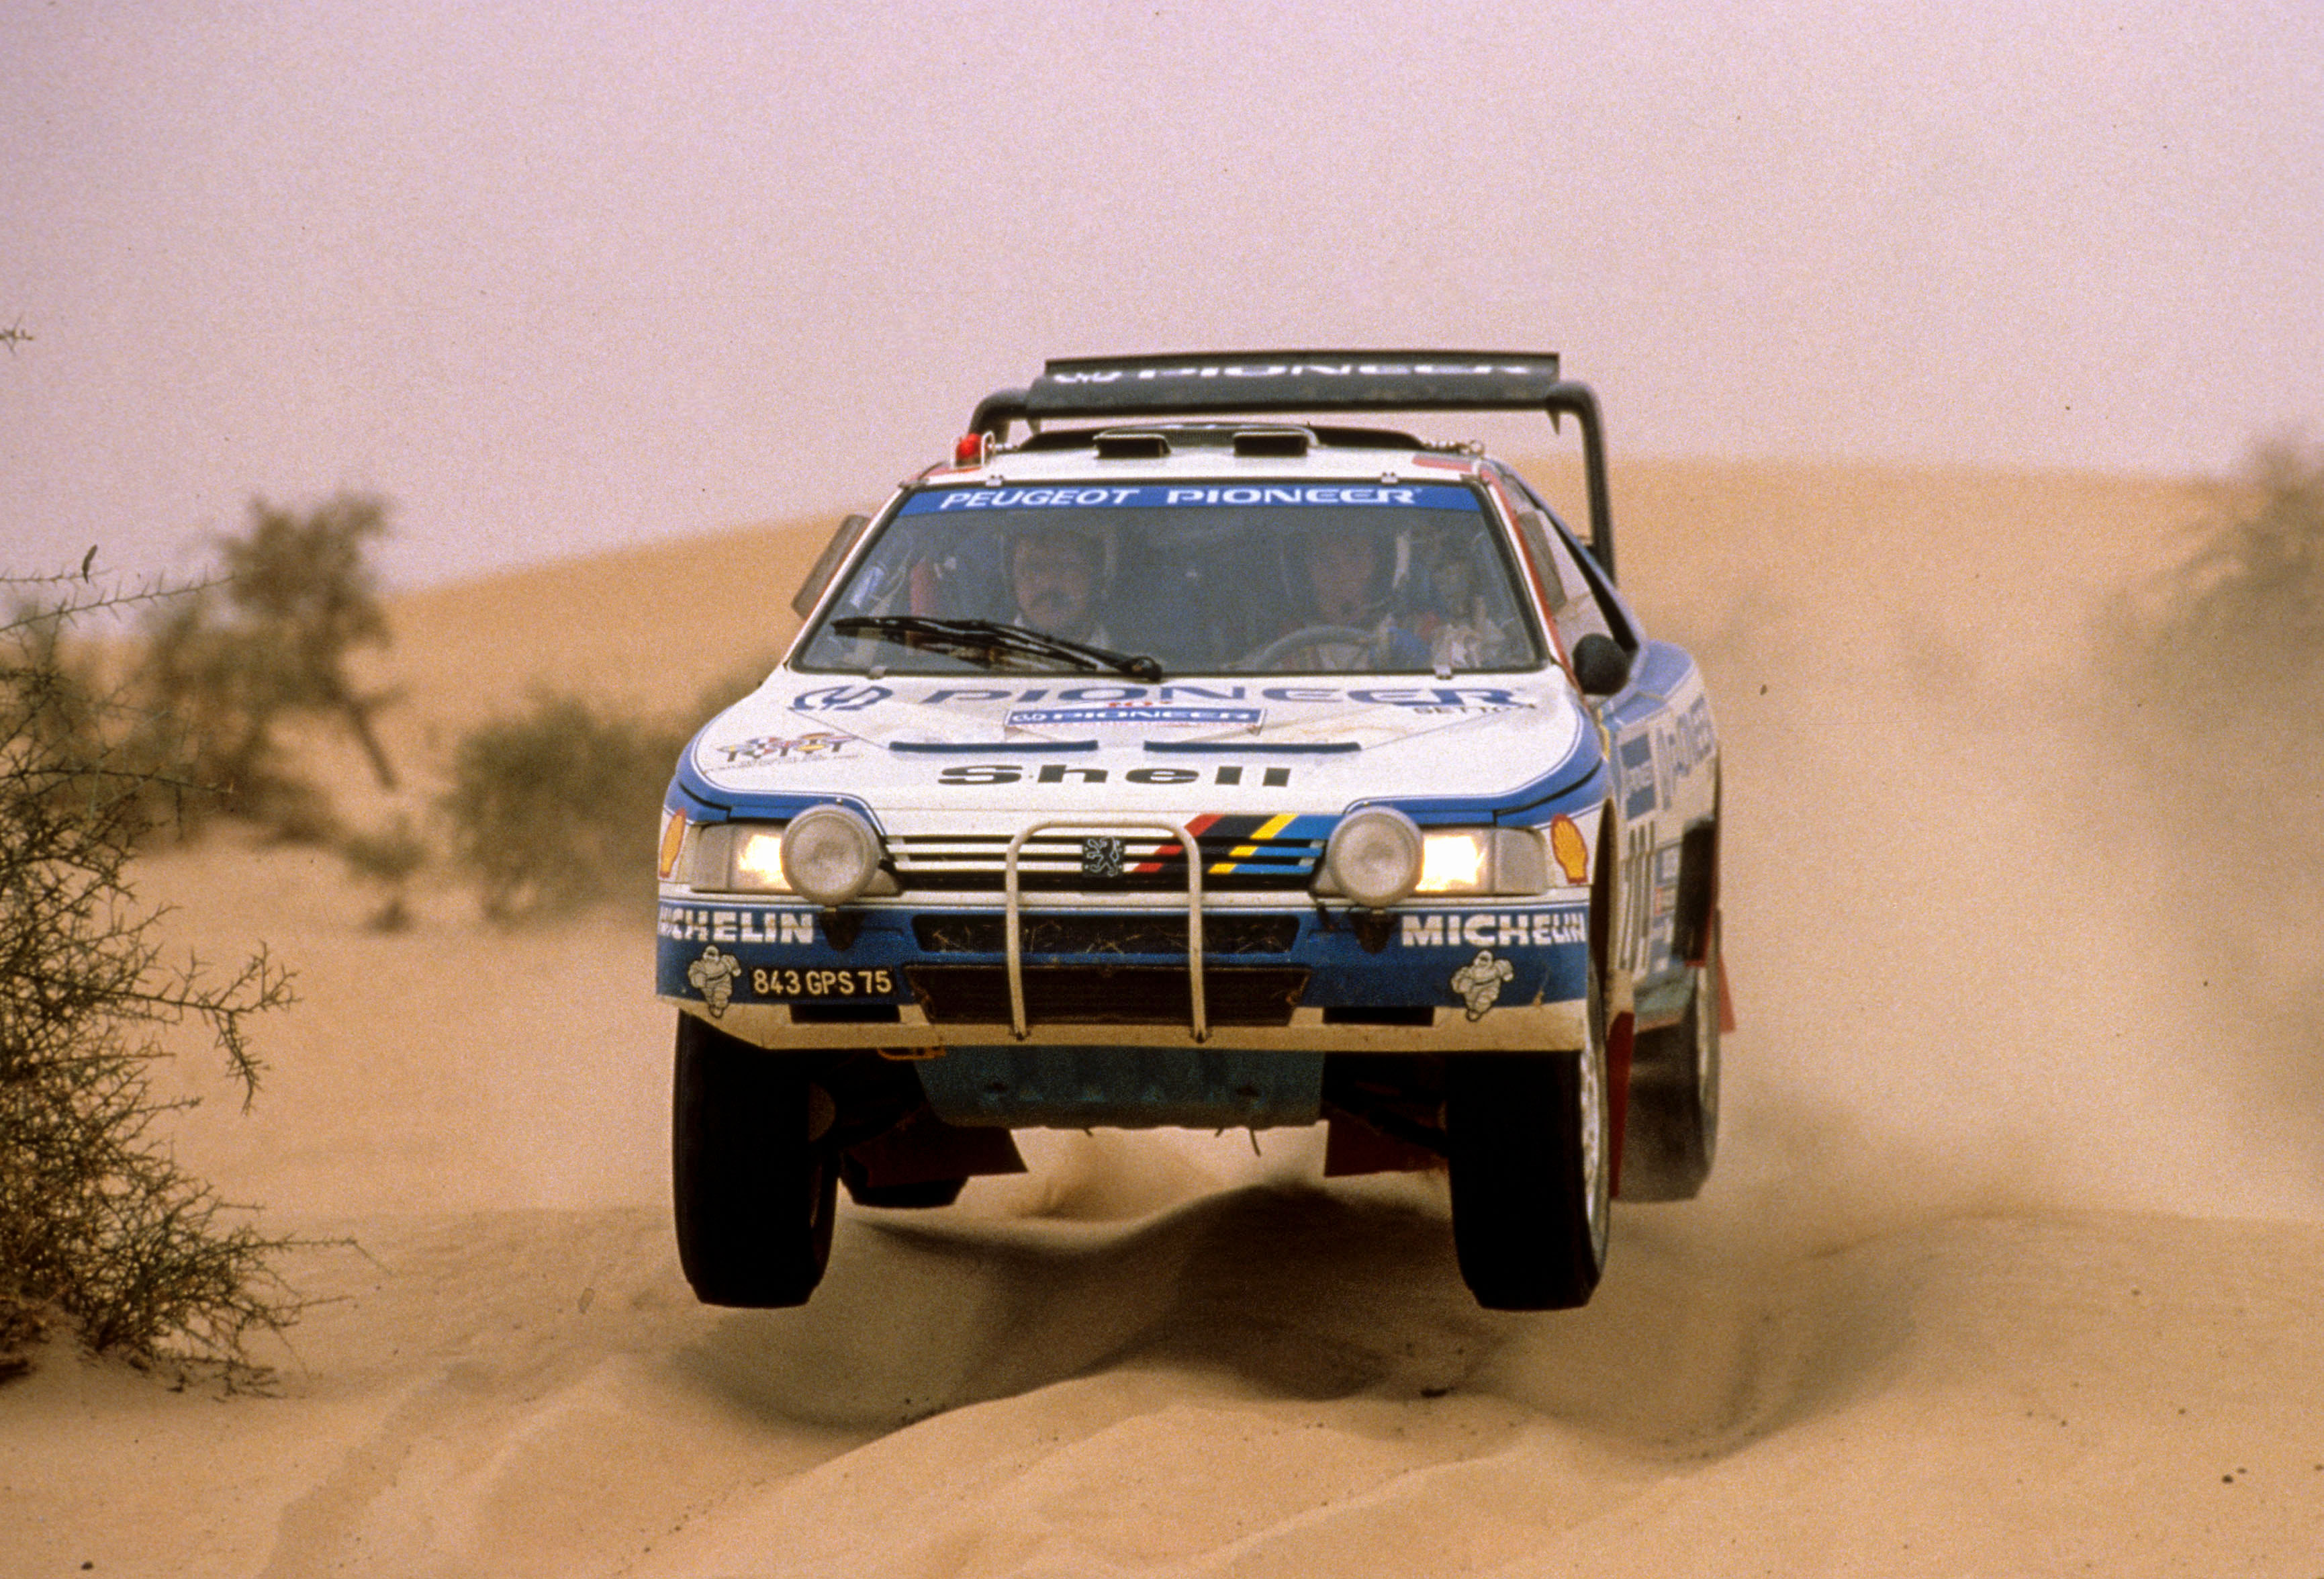 Vatanen en acción sobre el Peugeot 405, el auto que le robaron en el Rally Dakar 1988 (Crédito: Prensa Peugeot Sport)